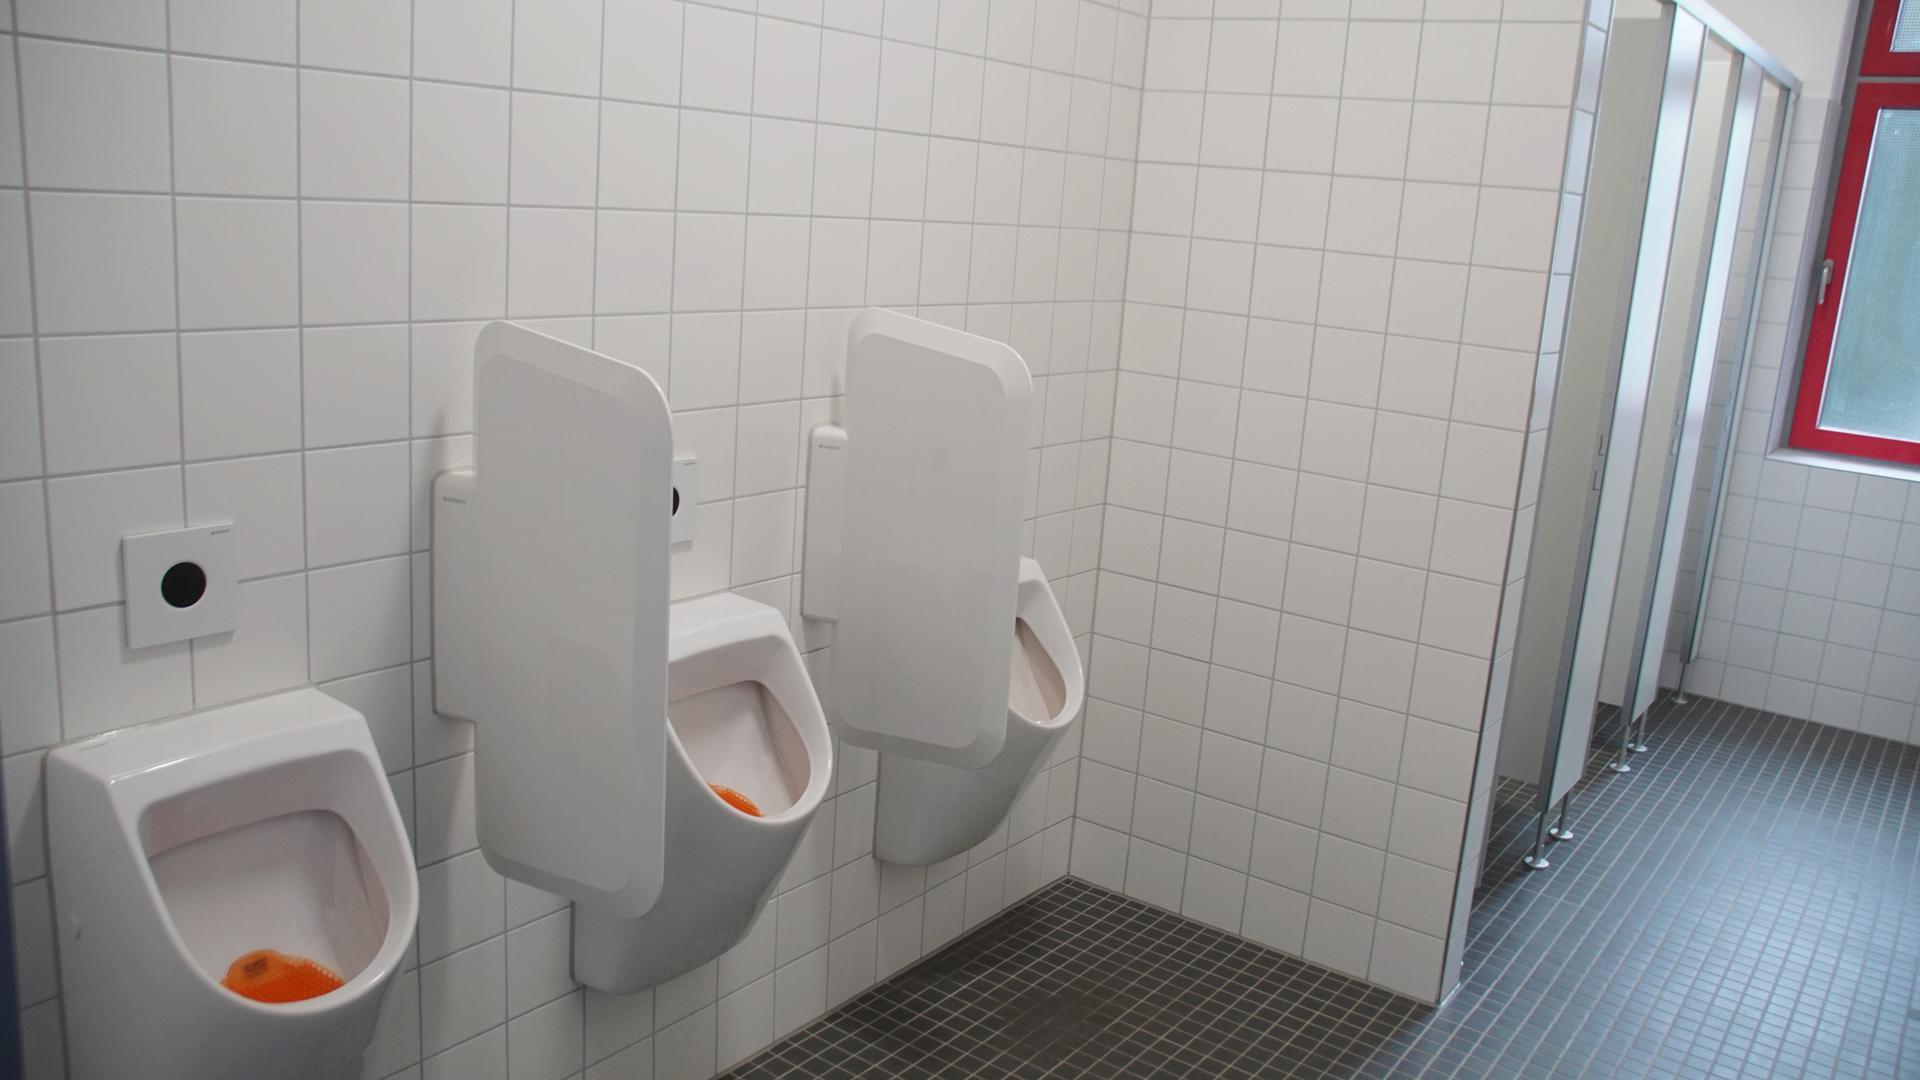 Stand der Technik: Bald sollen die Toiletten in der Willy-Brandt-Realschule genauso aussehen wie hier im benachbarten Lise-Meitner-Gymnasium, wo sie bereits erneuert worden sind.